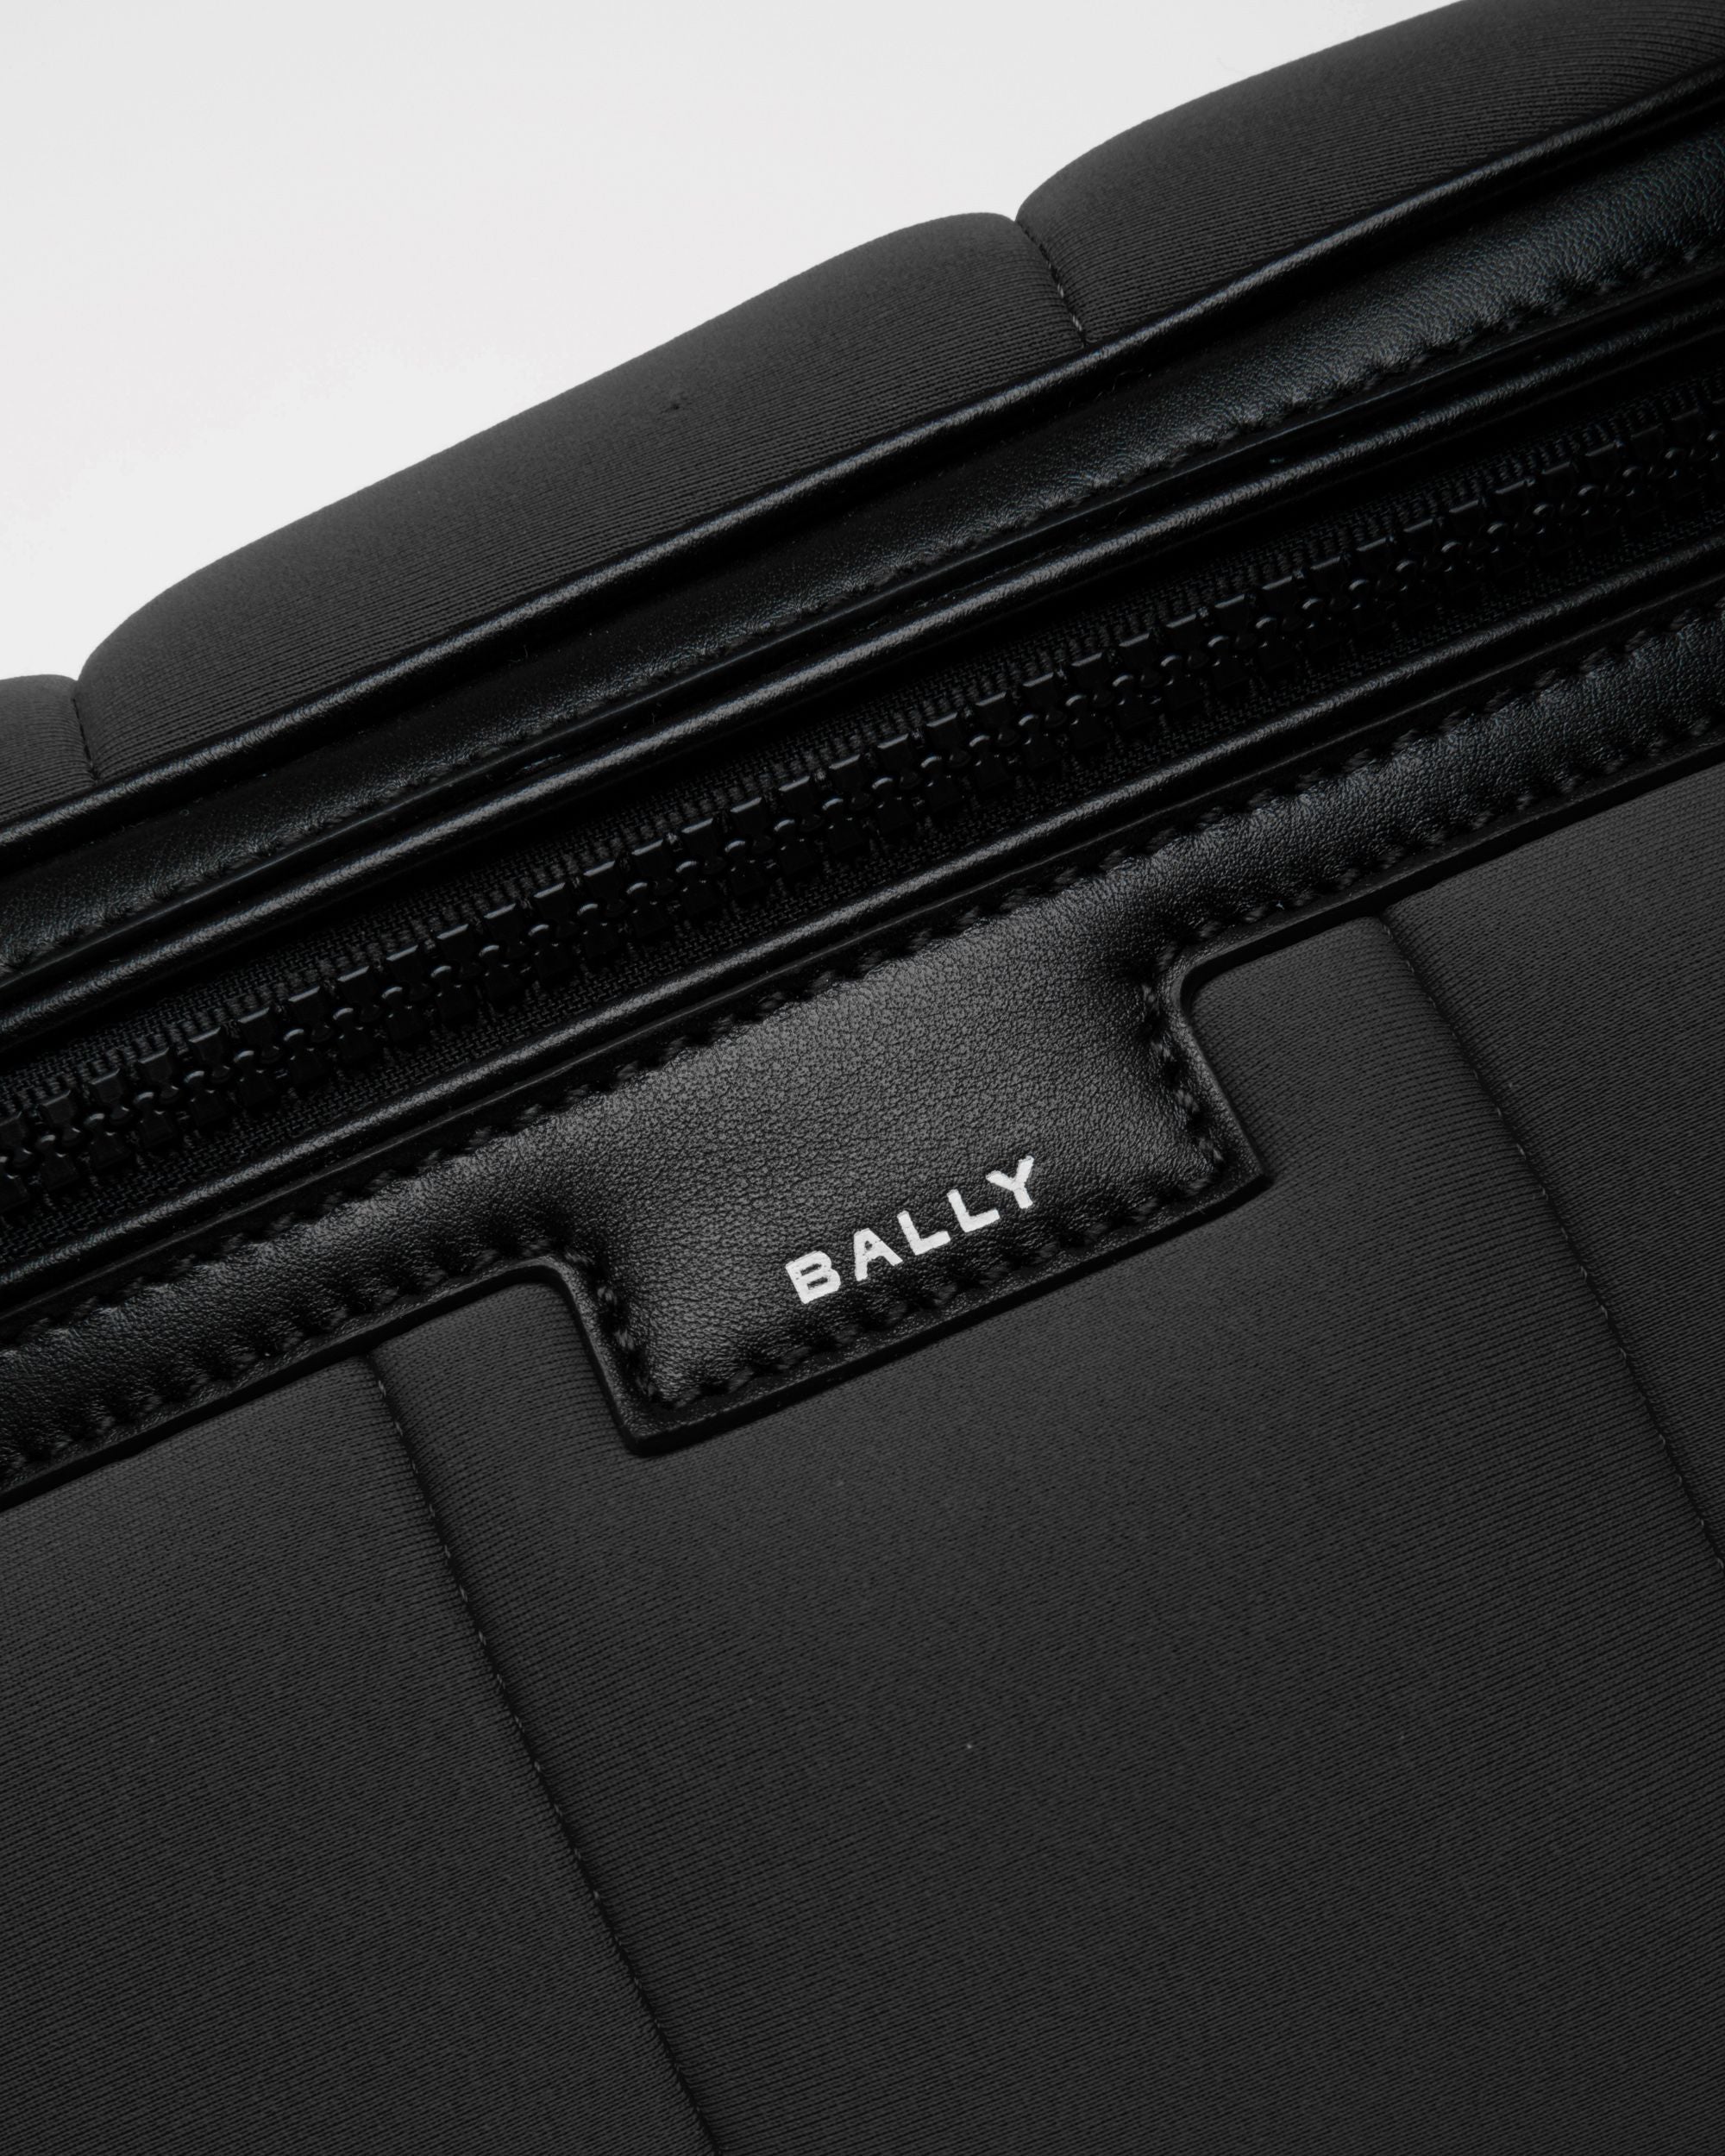 Mountain | Men's Belt Bag in Black Neoprene | Bally | Still Life Detail